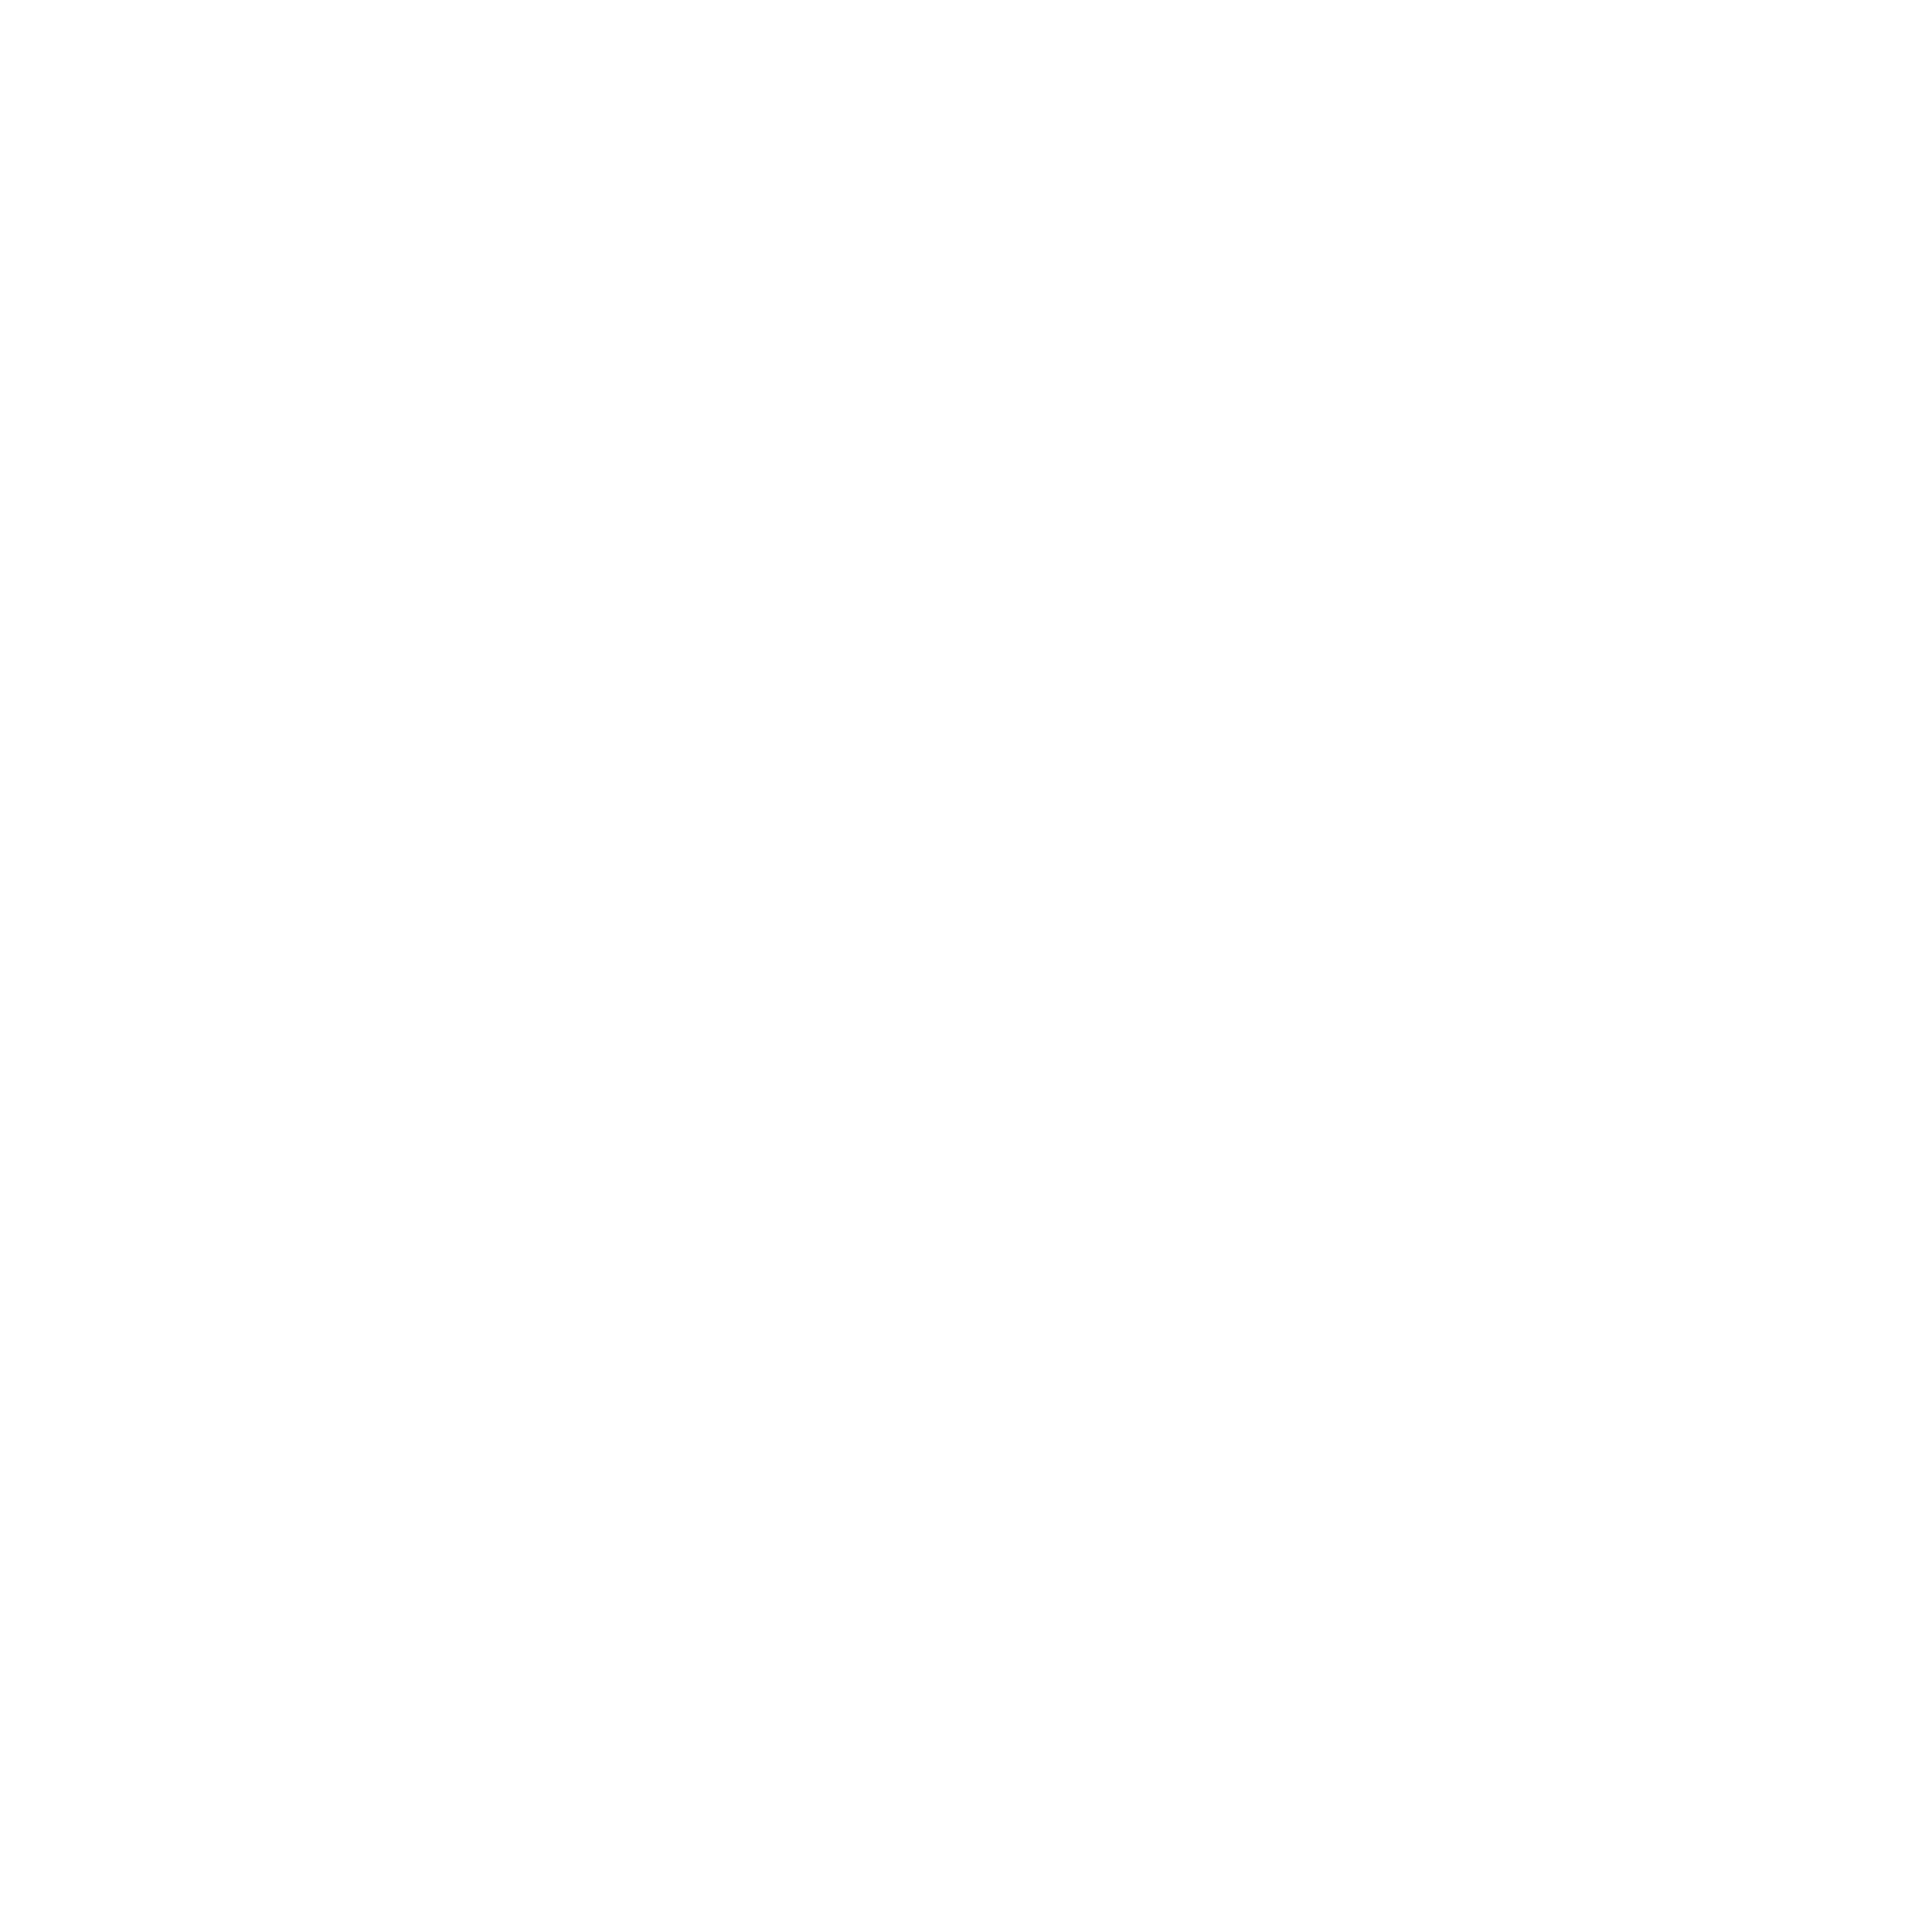 SmartAdvocate